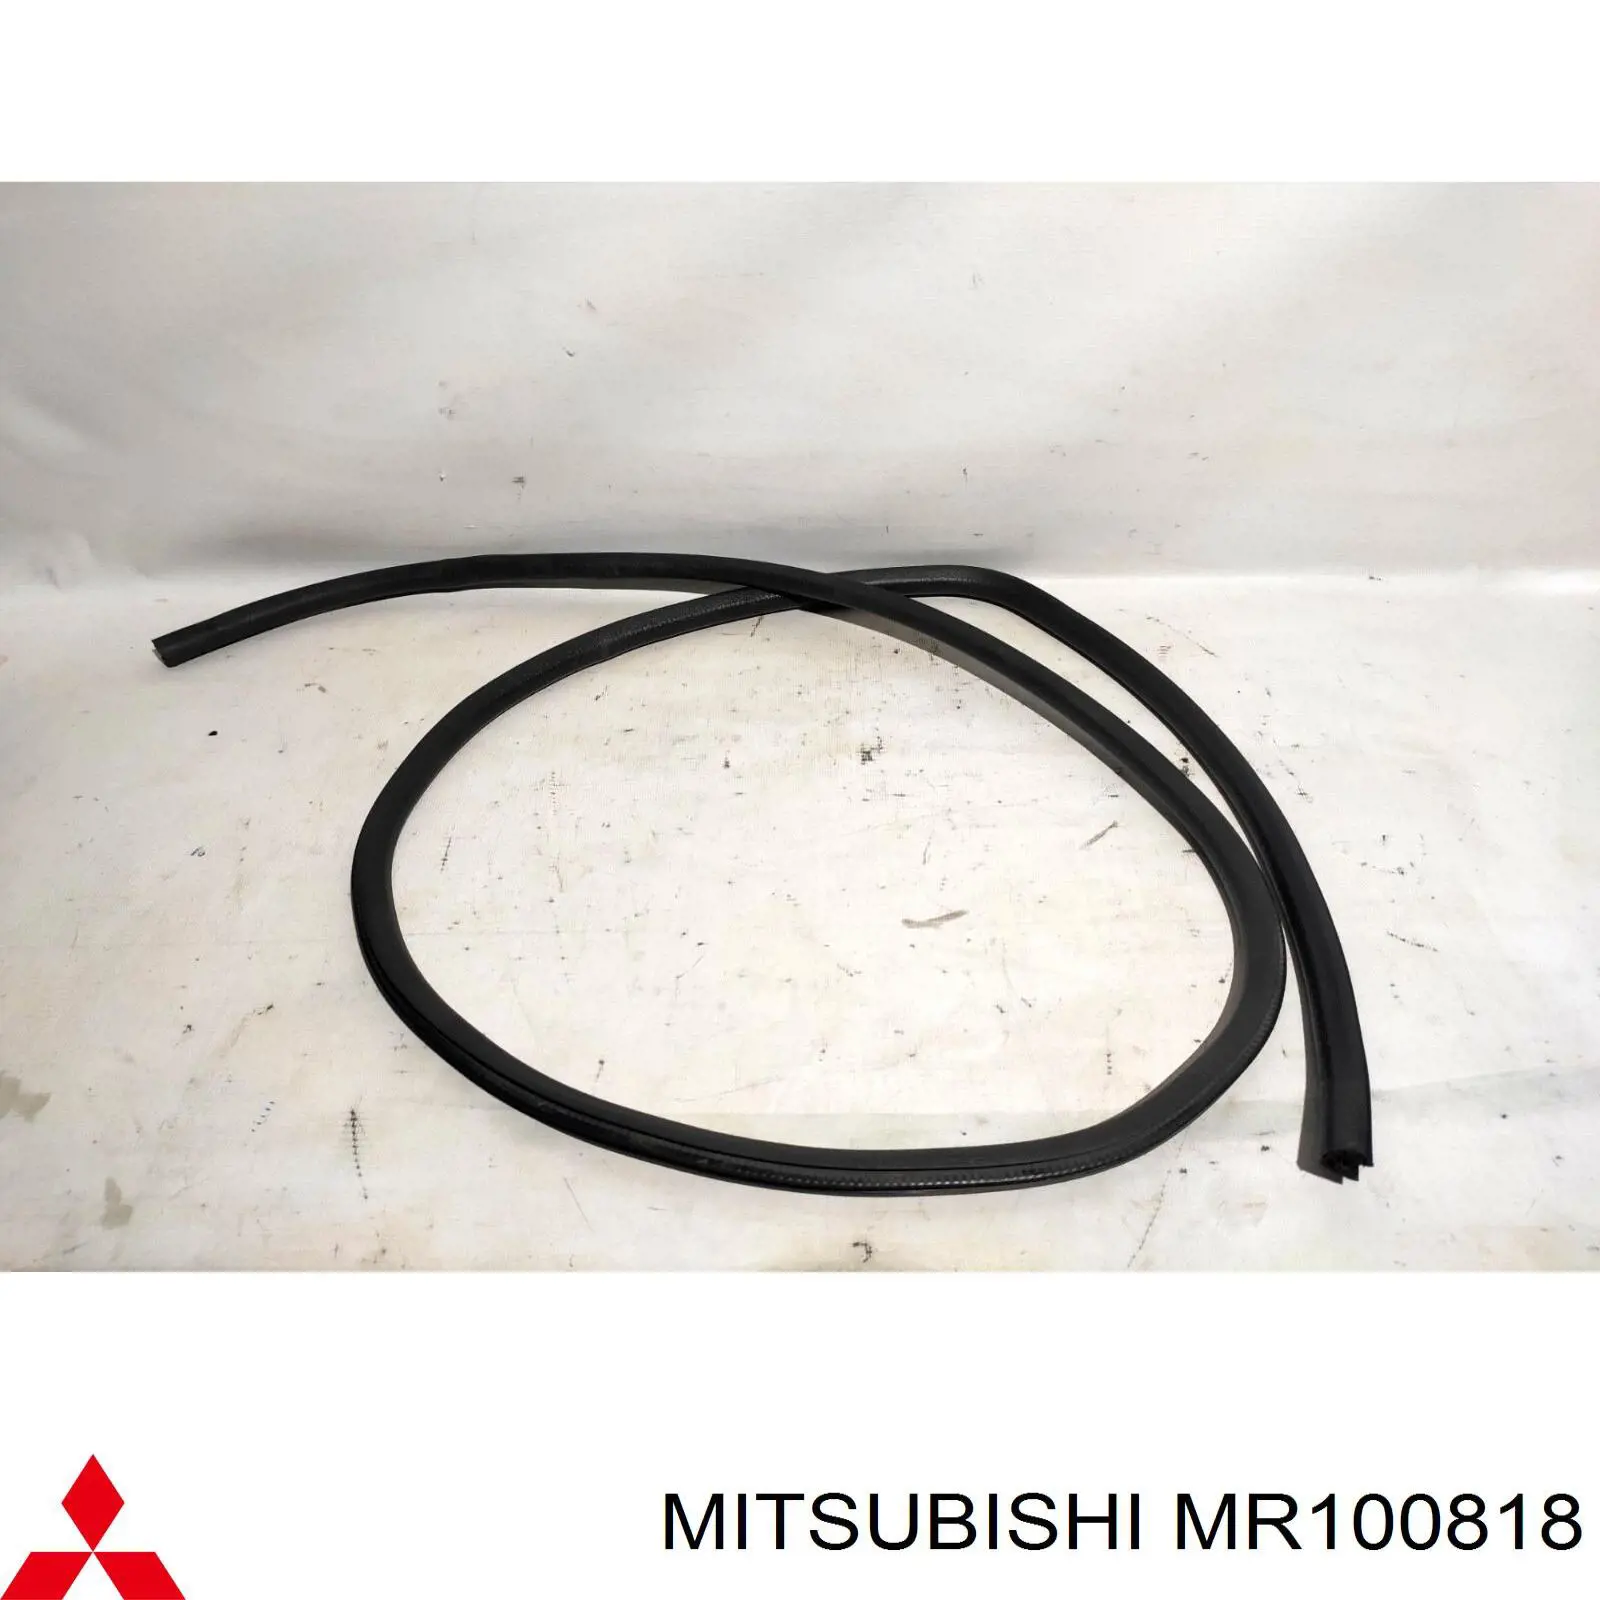 MR100818 Mitsubishi junta de puerta delantera derecha (en carrocería)